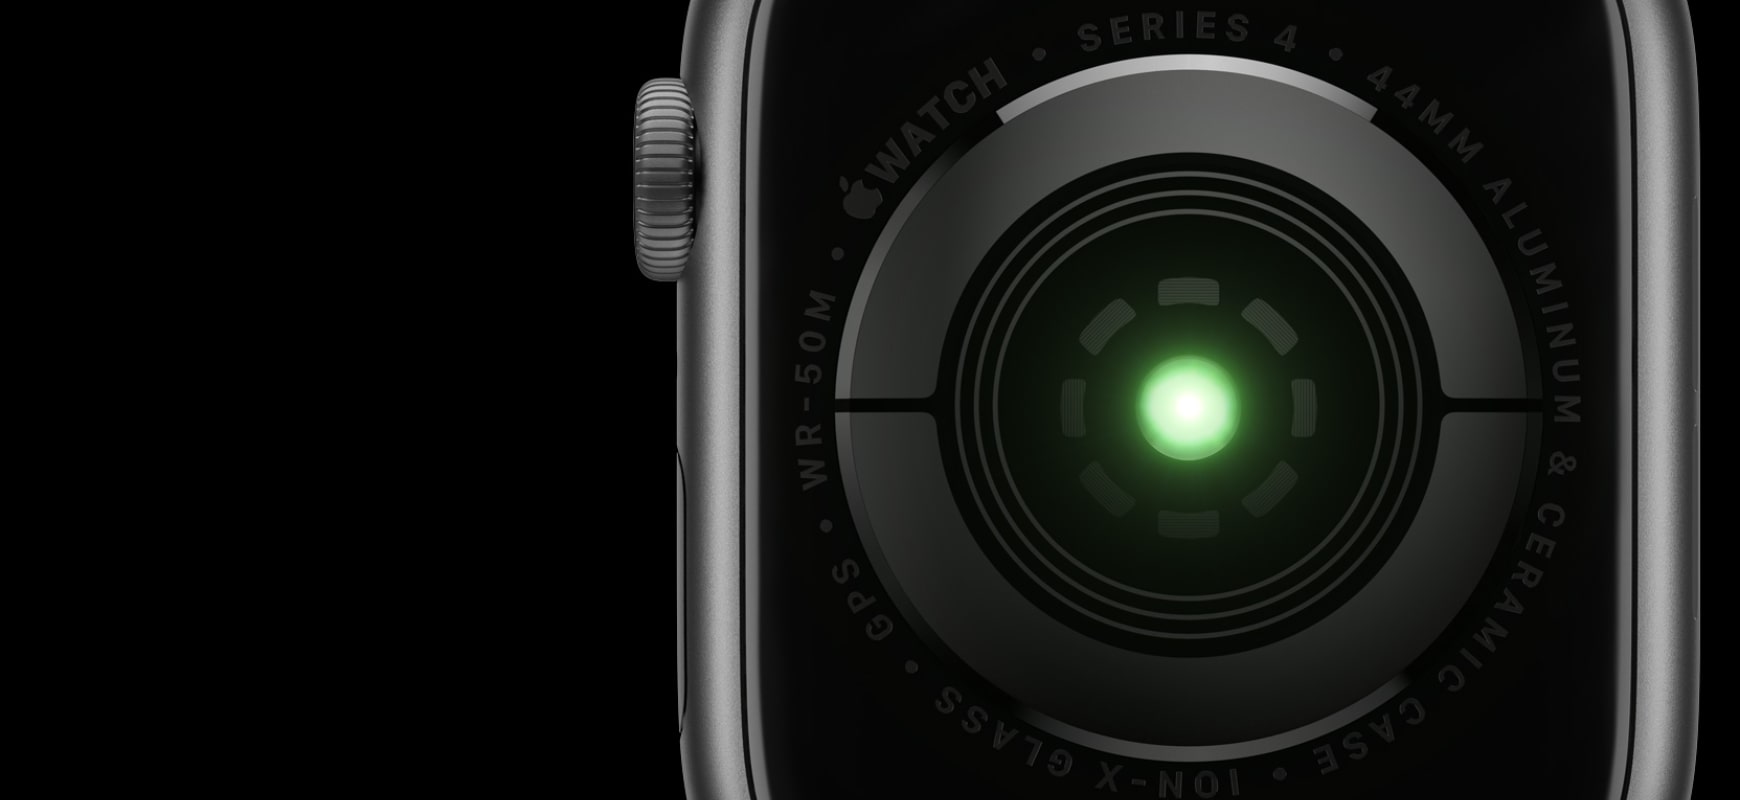 Apple Watch 4 body